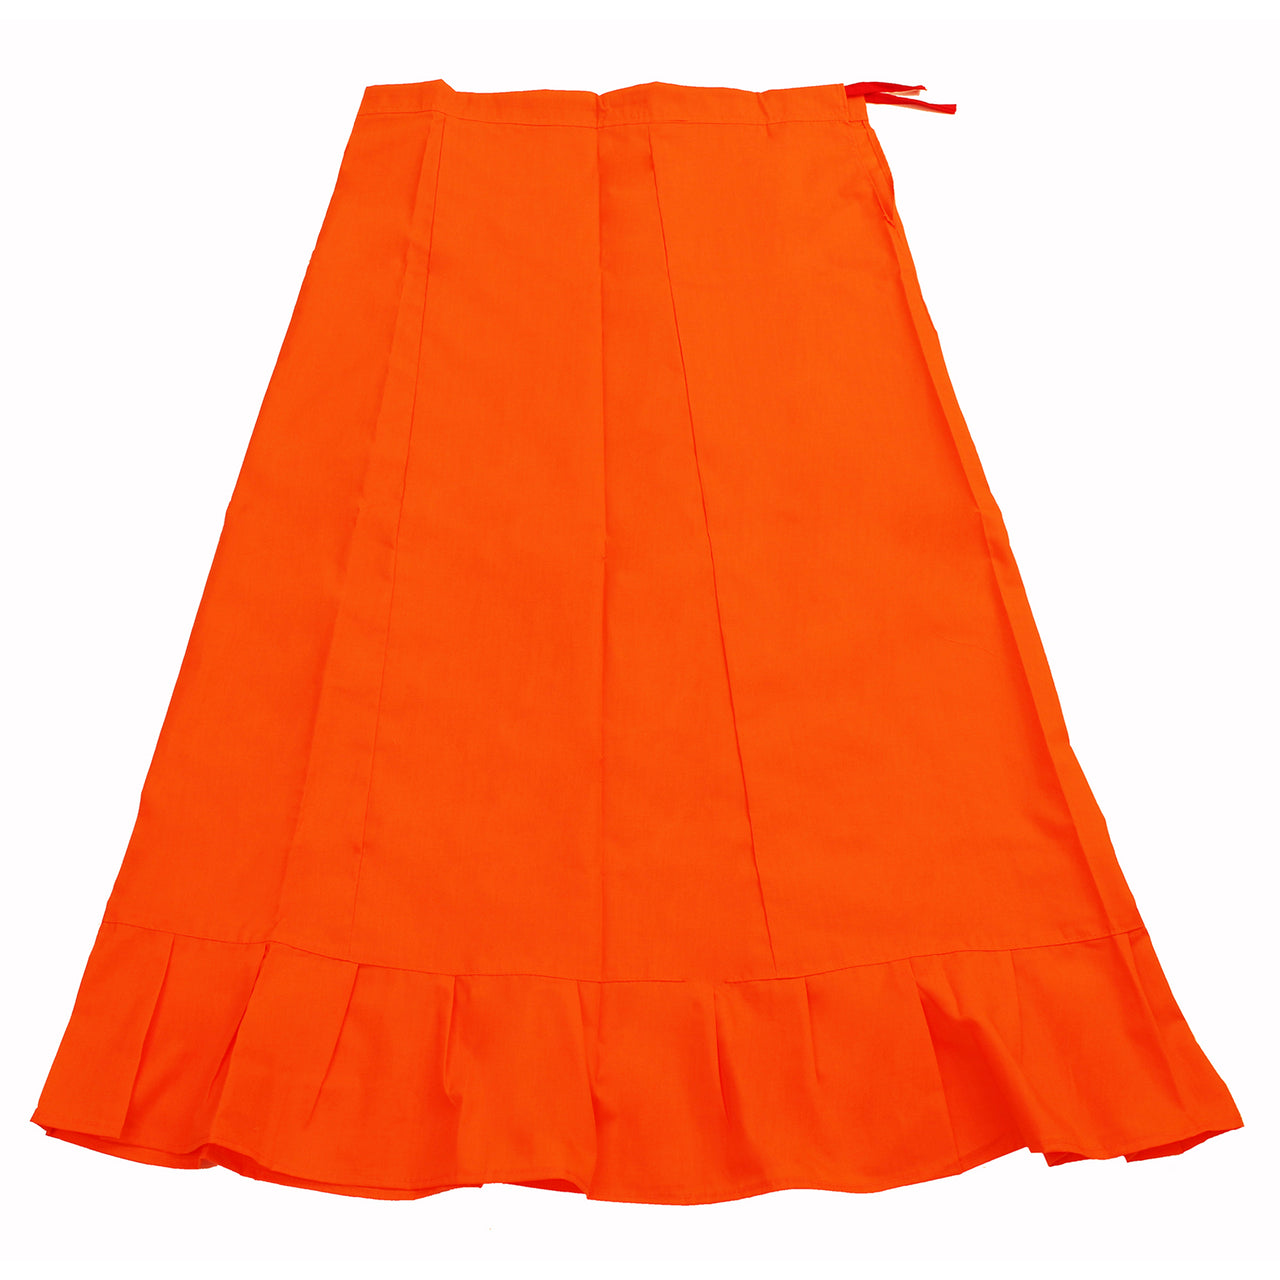 Dark Orange - Sari (Saree) Petticoat - Available in S, M, L & XL - Underskirts For Sari's